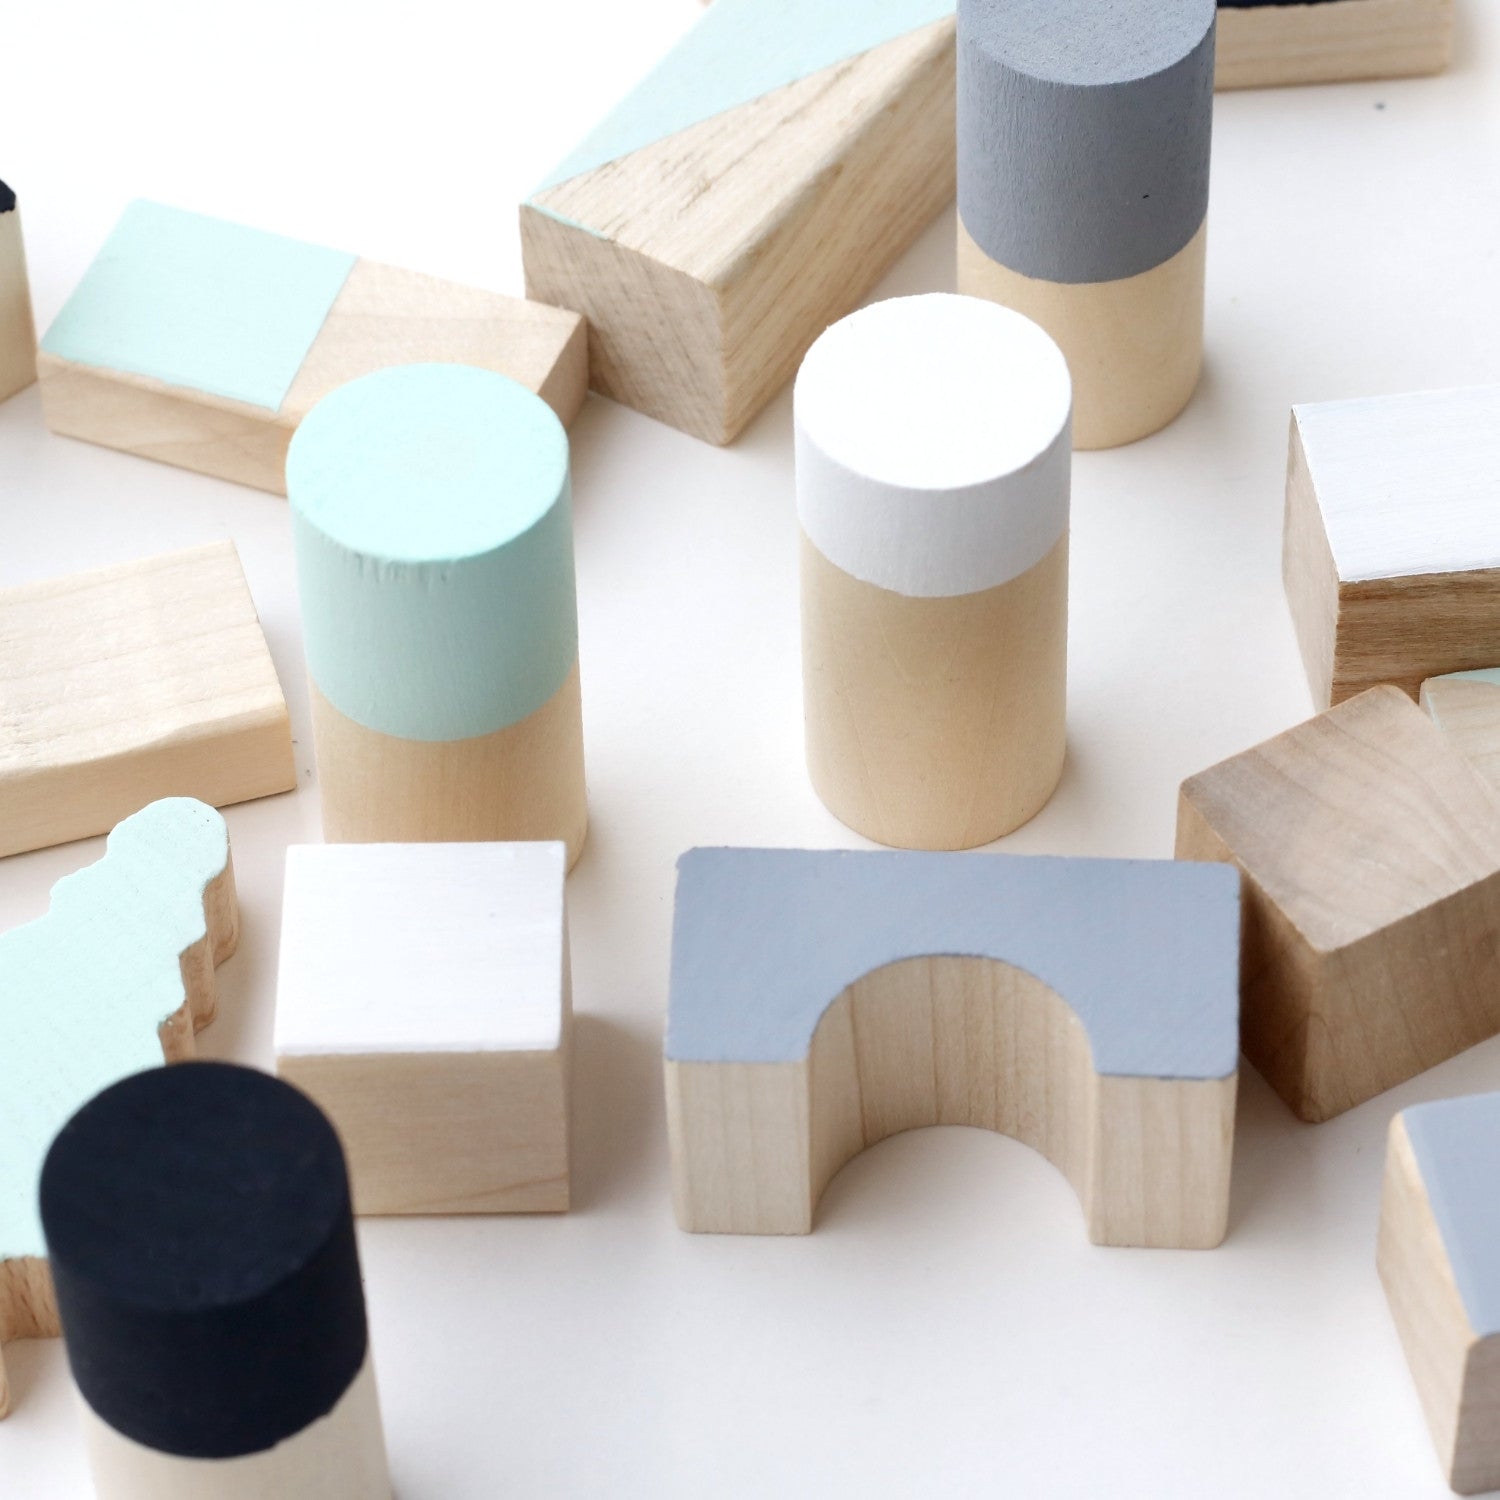 Wooden building blocks - Mint & monochrome - Happy Little Folks